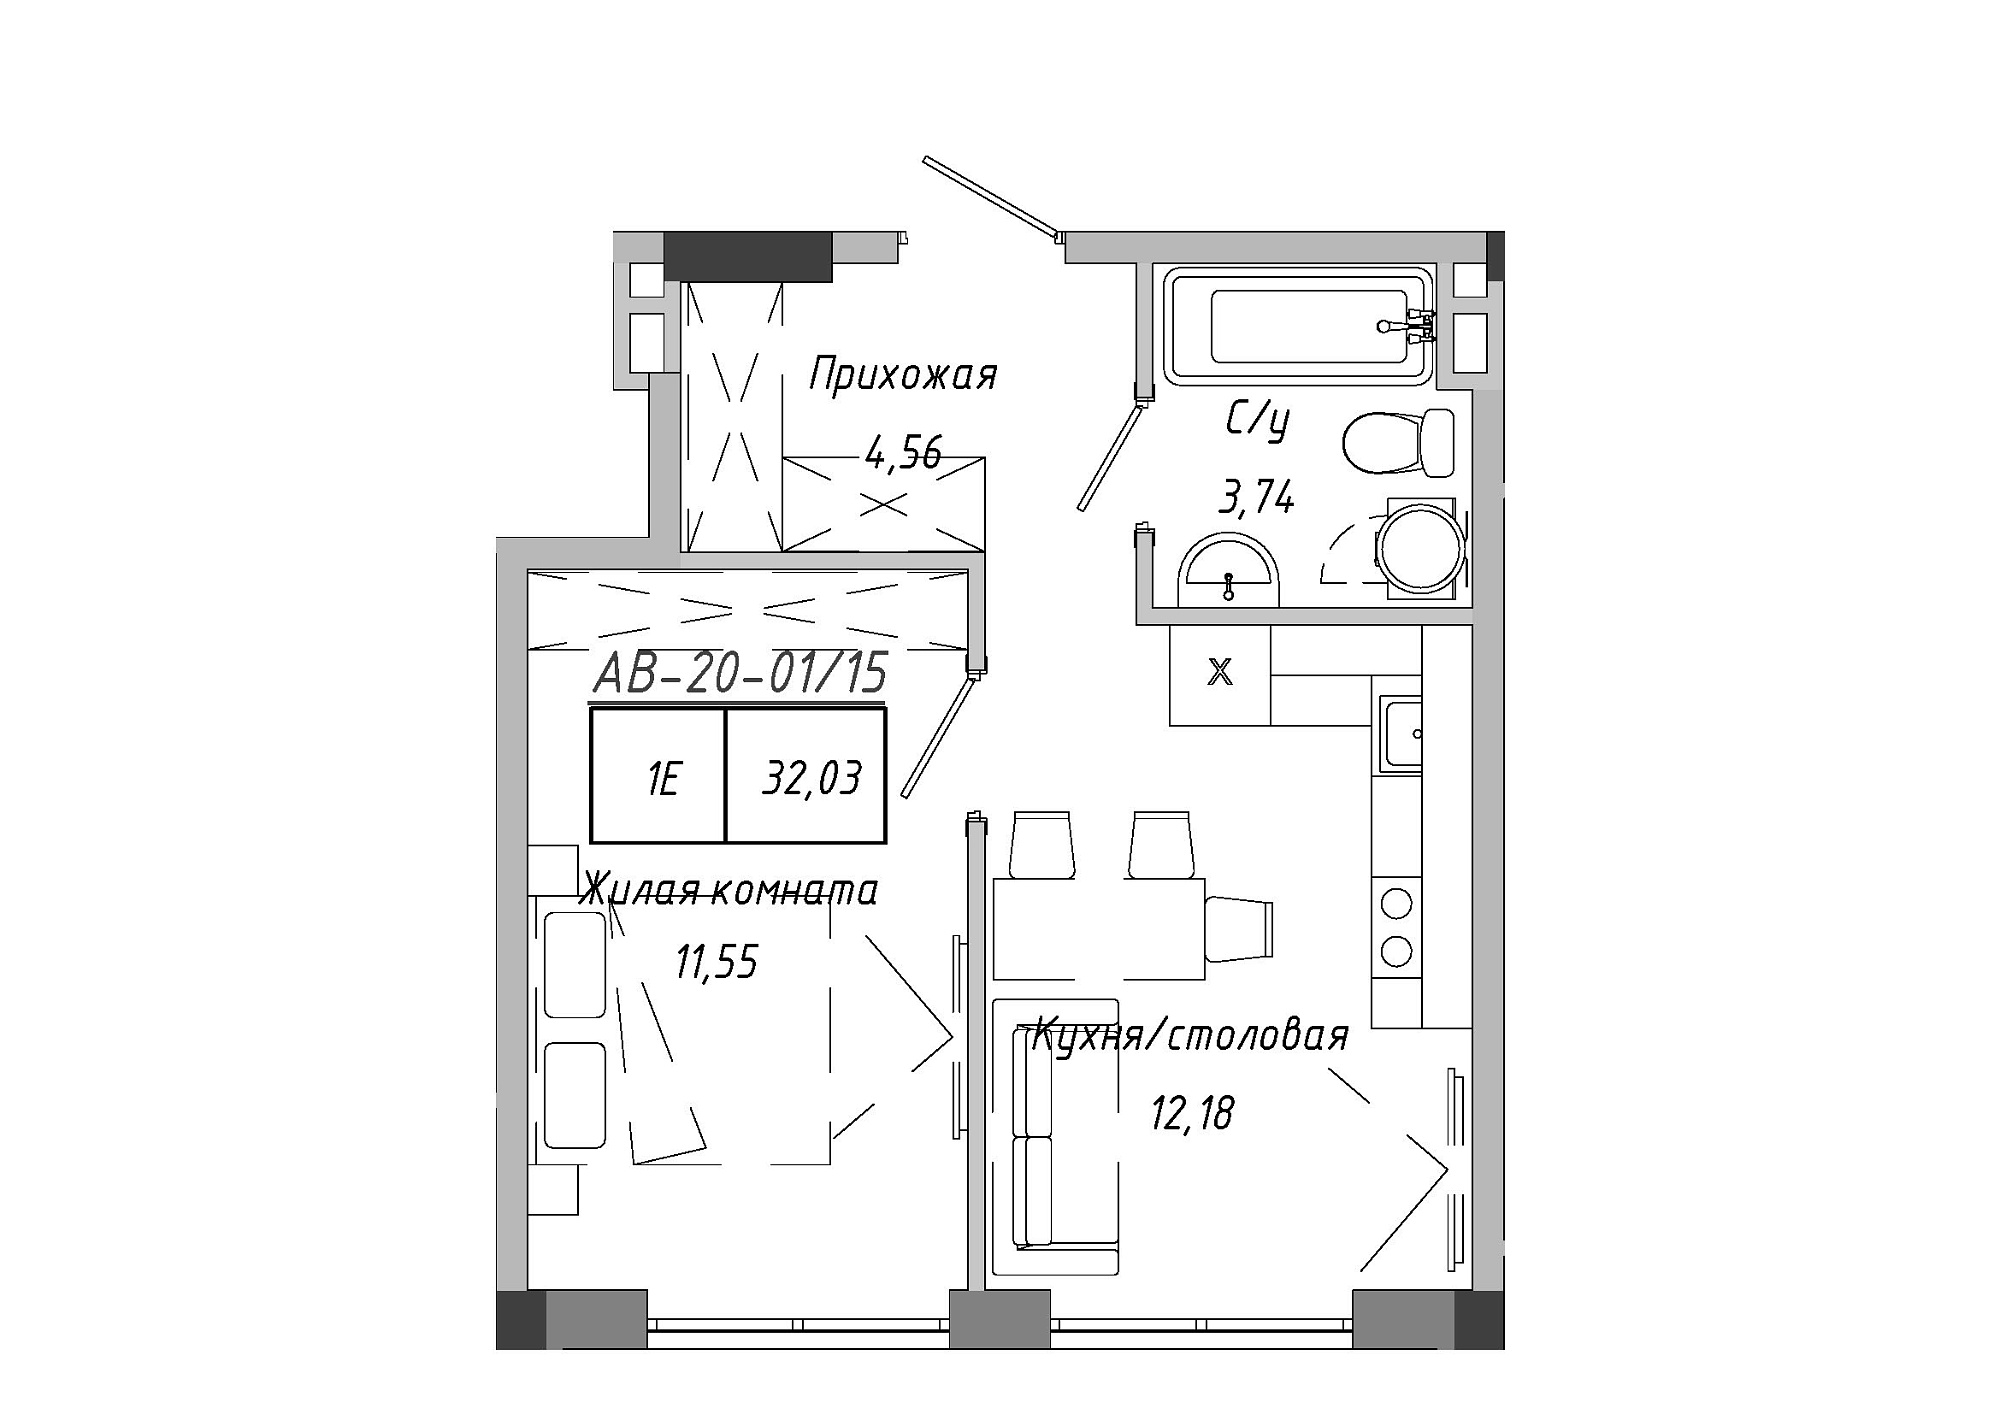 Планировка 1-к квартира площей 32.03м2, AB-20-01/00015.